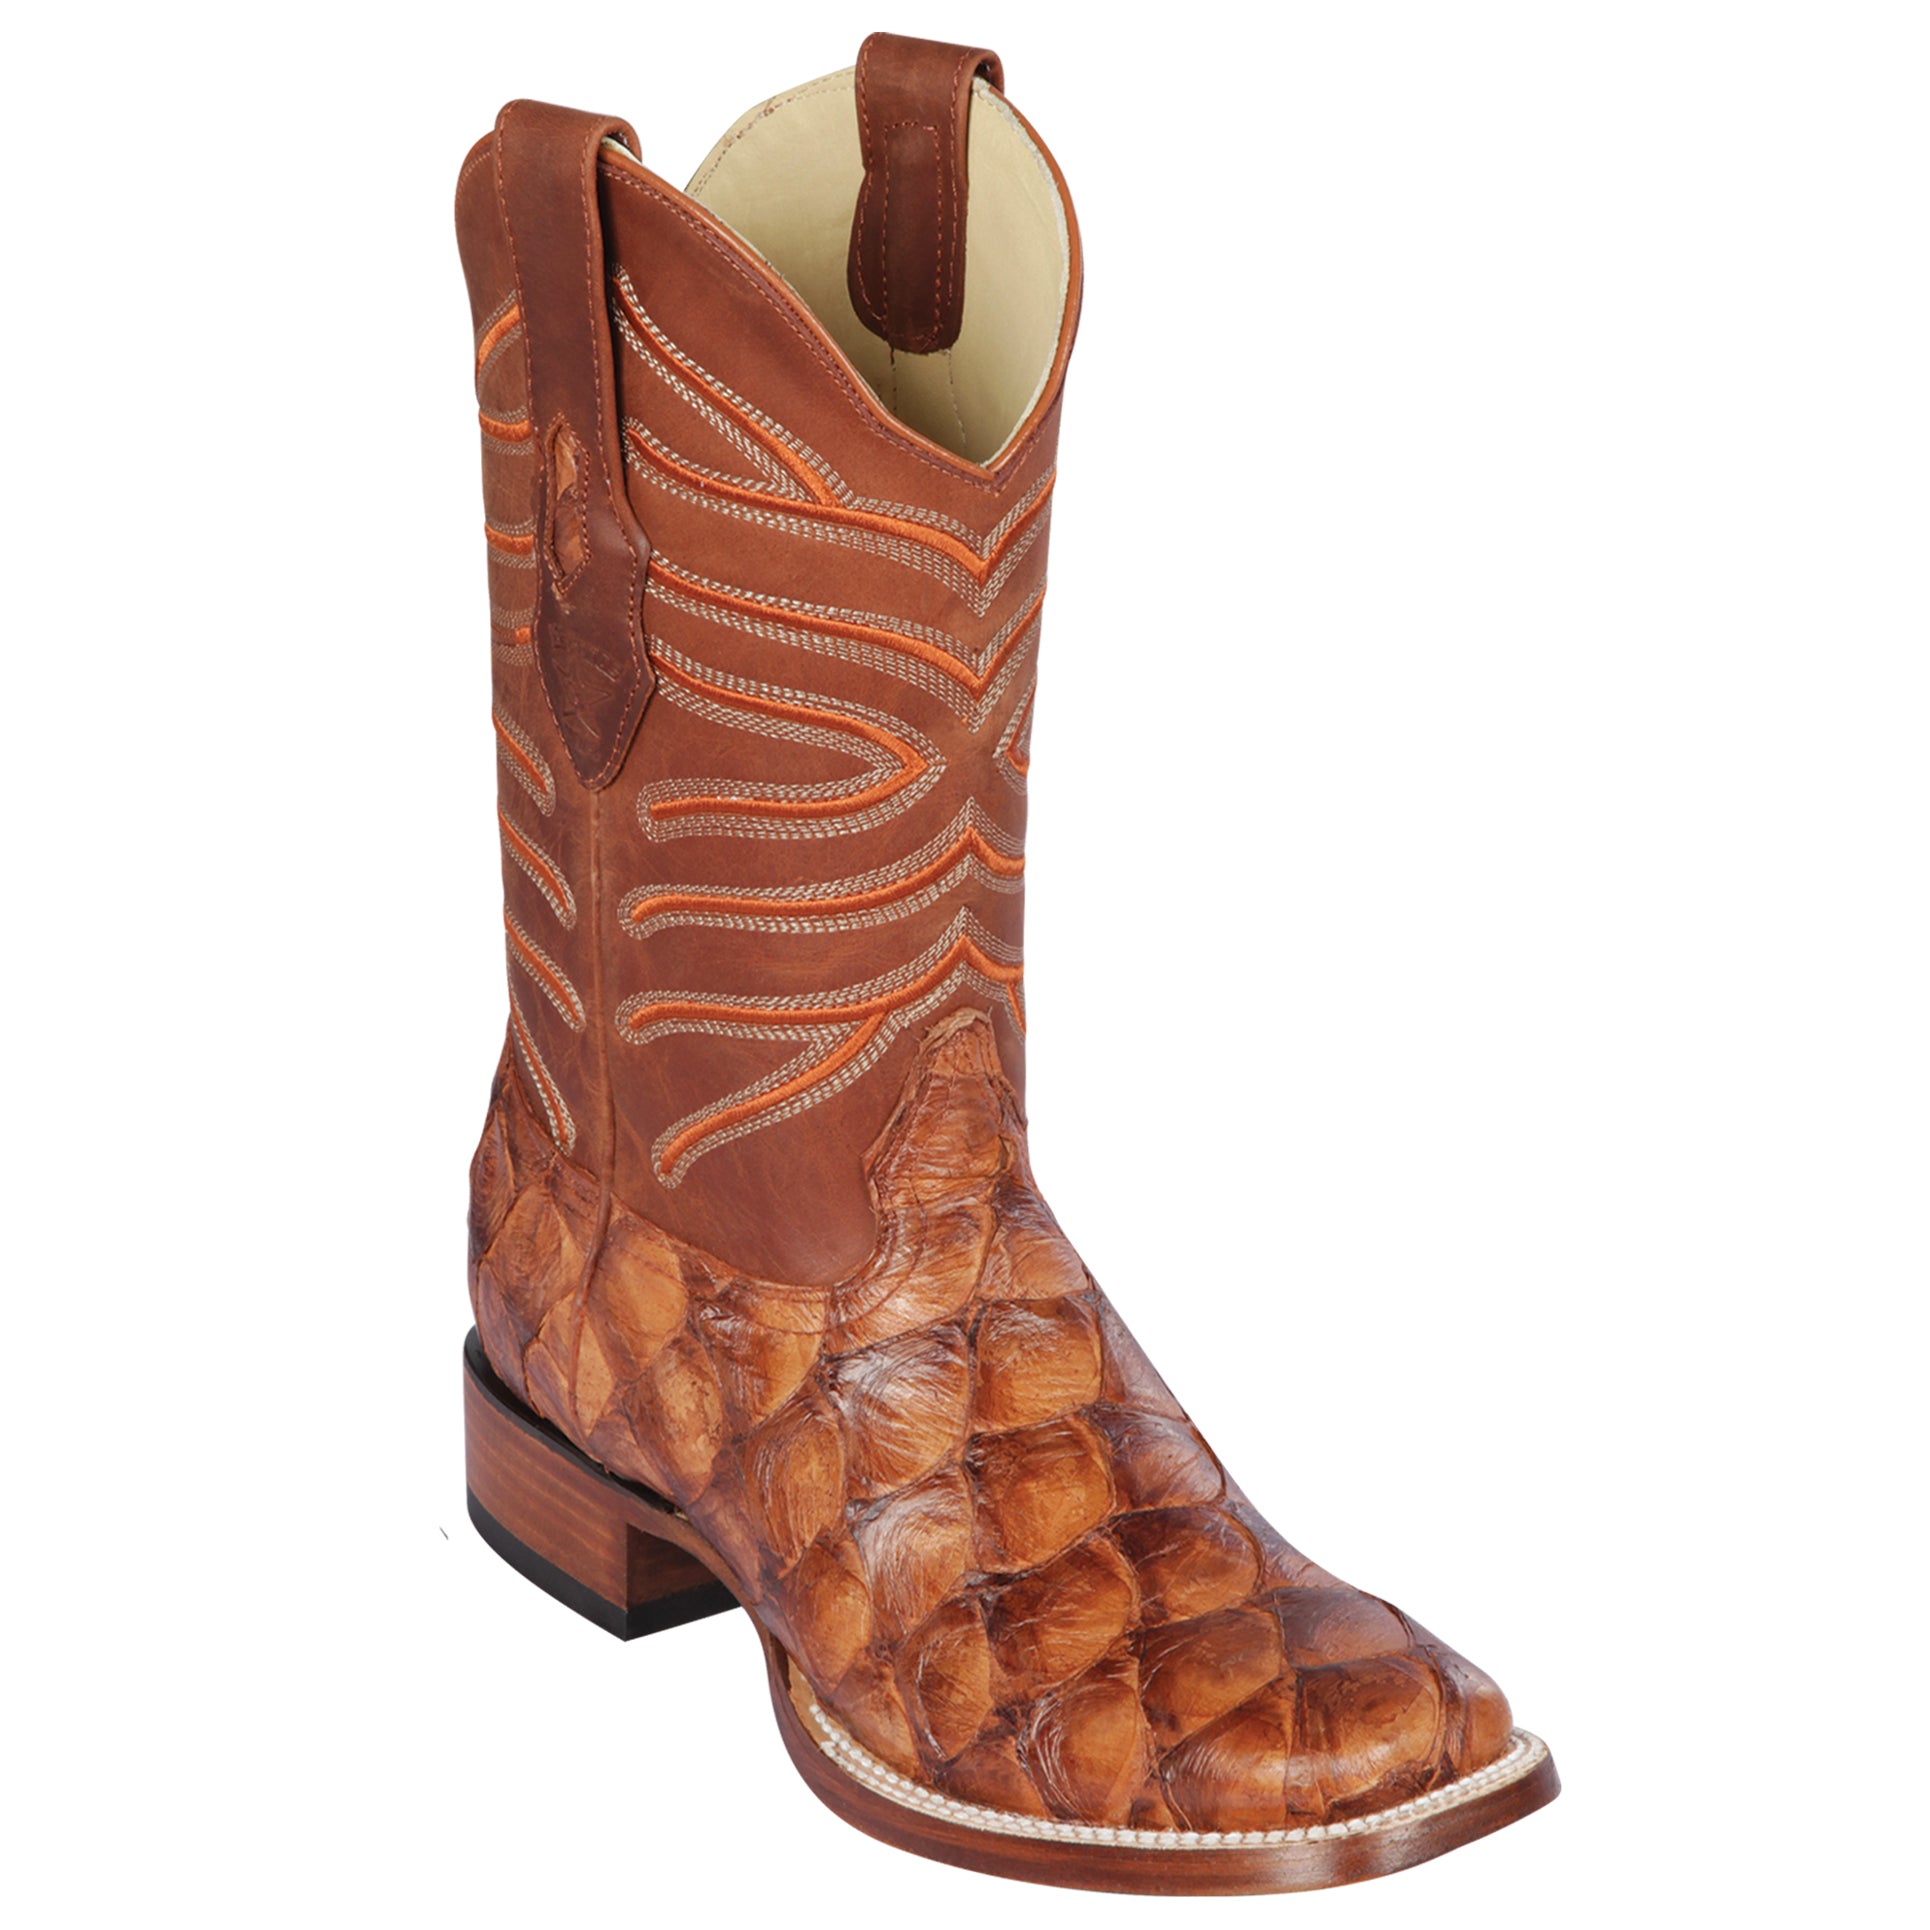 Pirarucu cowboy boots in chedron color by Los Altos Boots
